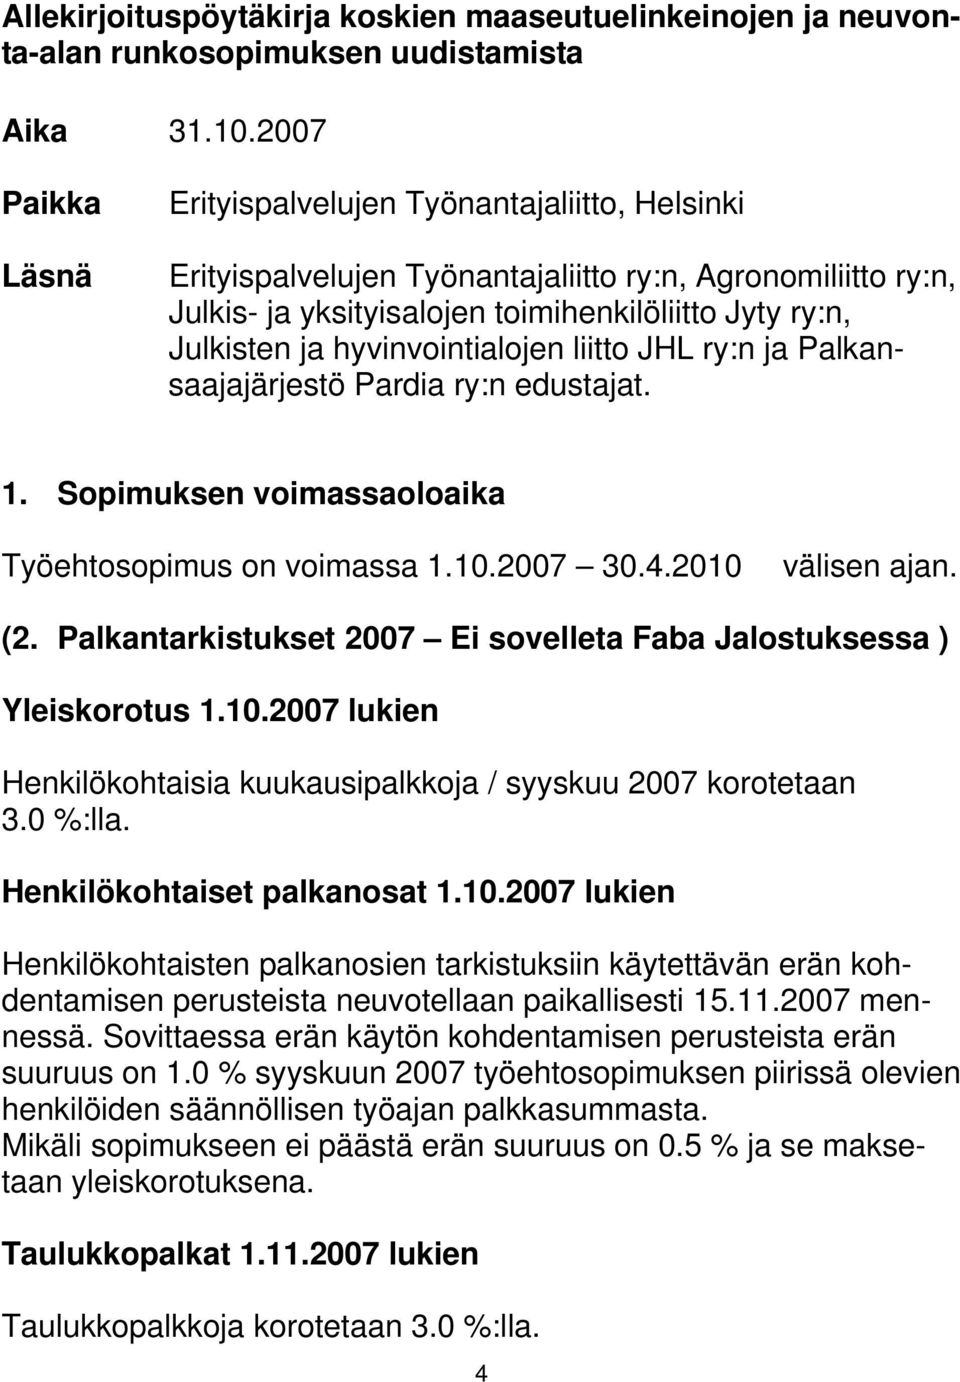 hyvinvointialojen liitto JHL ry:n ja Palkansaajajärjestö Pardia ry:n edustajat. 1. Sopimuksen voimassaoloaika Työehtosopimus on voimassa 1.10.2007 30.4.2010 välisen ajan. (2.